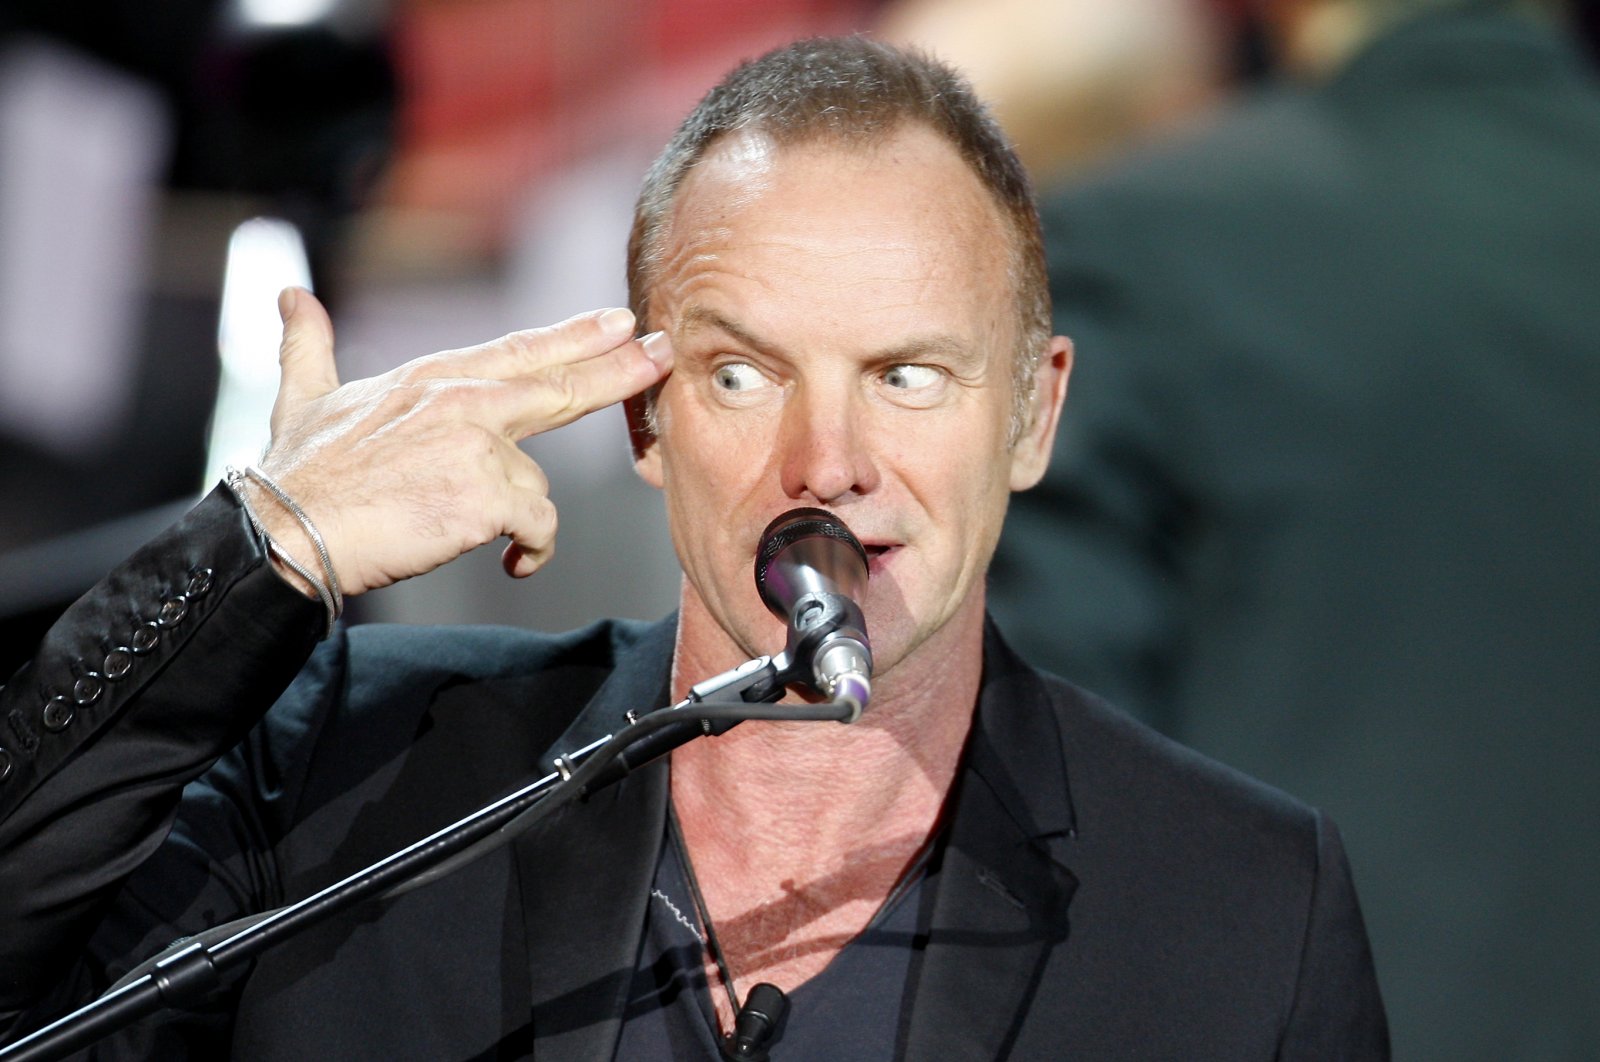 Menjelang album penuh harapan, Sting membahas iklim politik, sosial